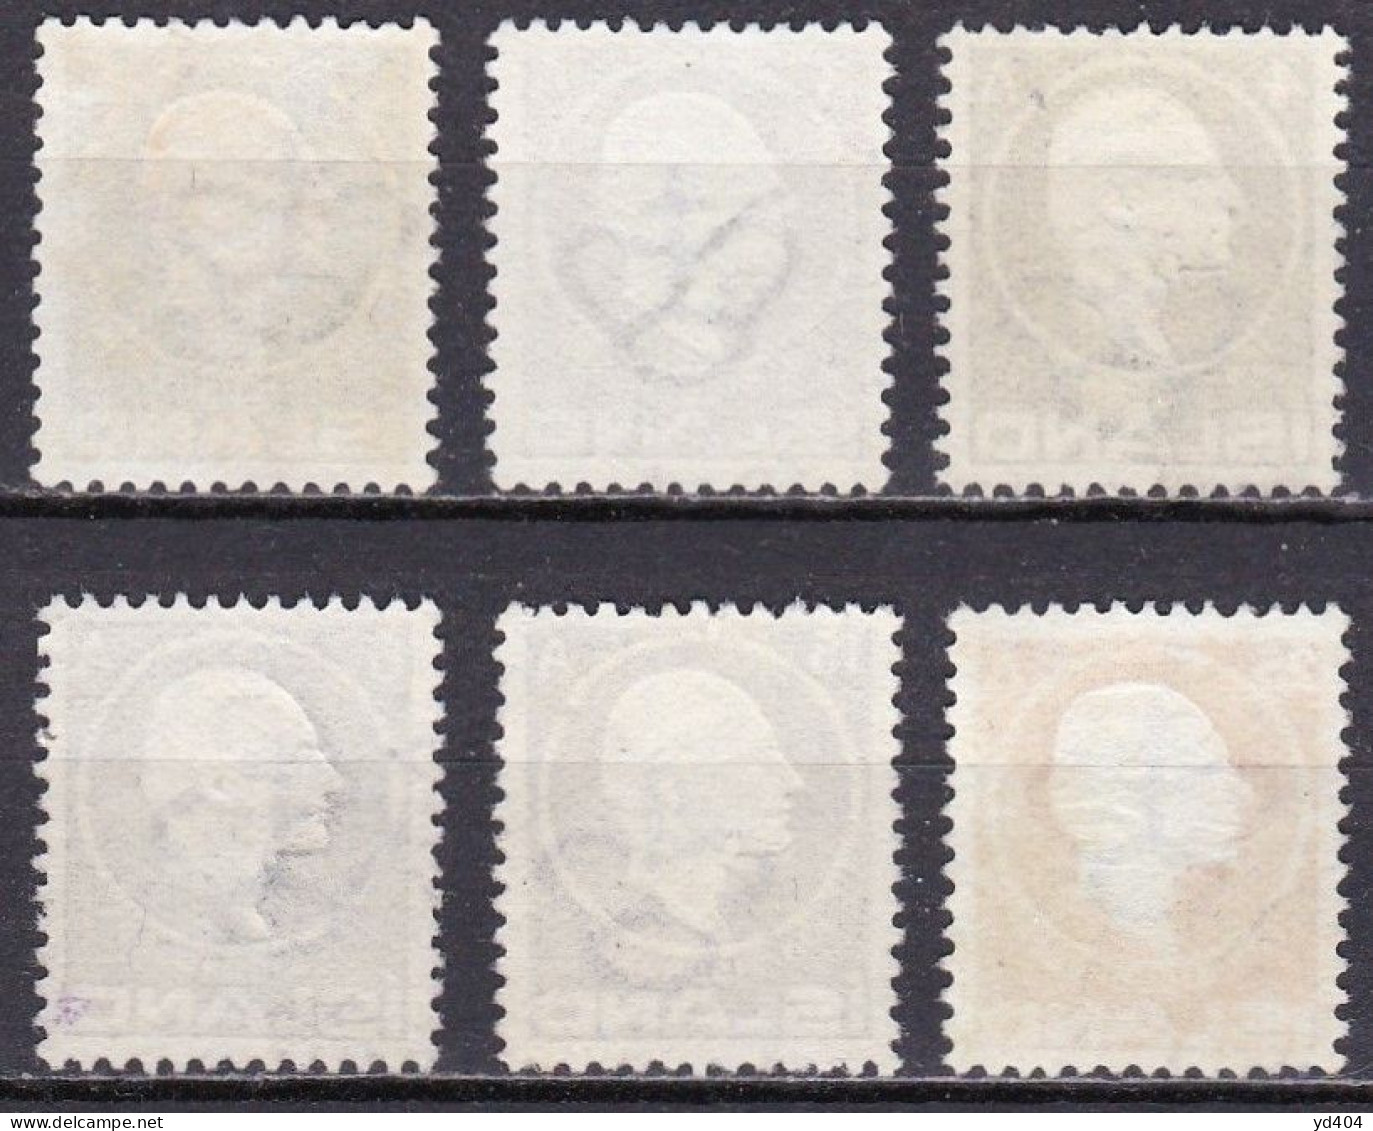 IS011 – ISLANDE – ICELAND – 1911 – JON SIGURDSSON – SG # 96/101 USED 92 € - Used Stamps